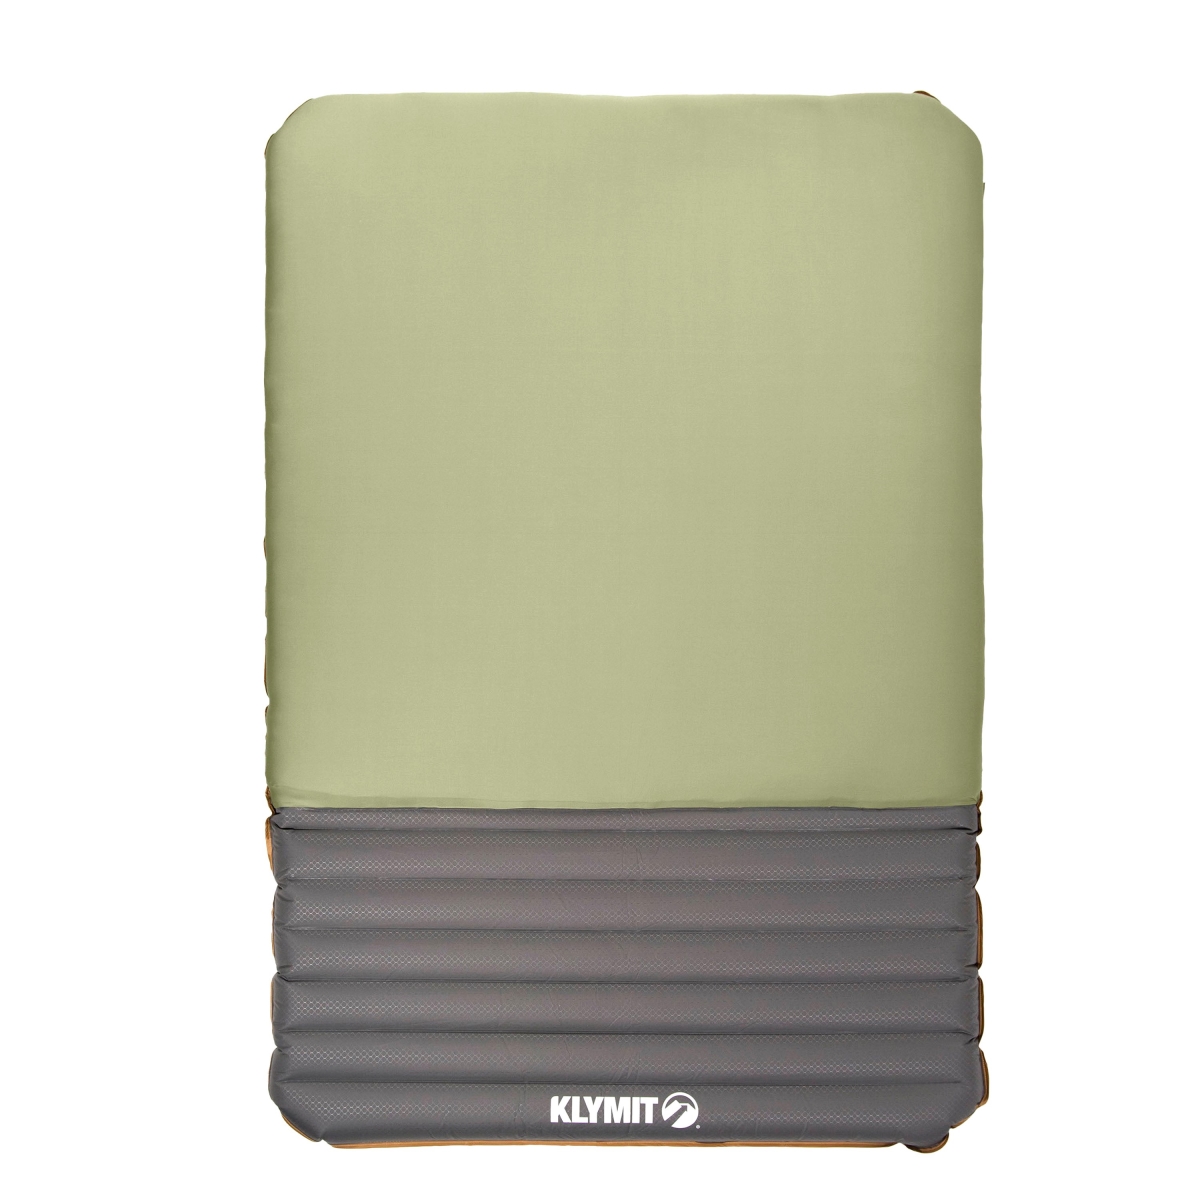 Klymit KLY-06KLGR01E Klymaloft Sleeping Pads - Green - Double